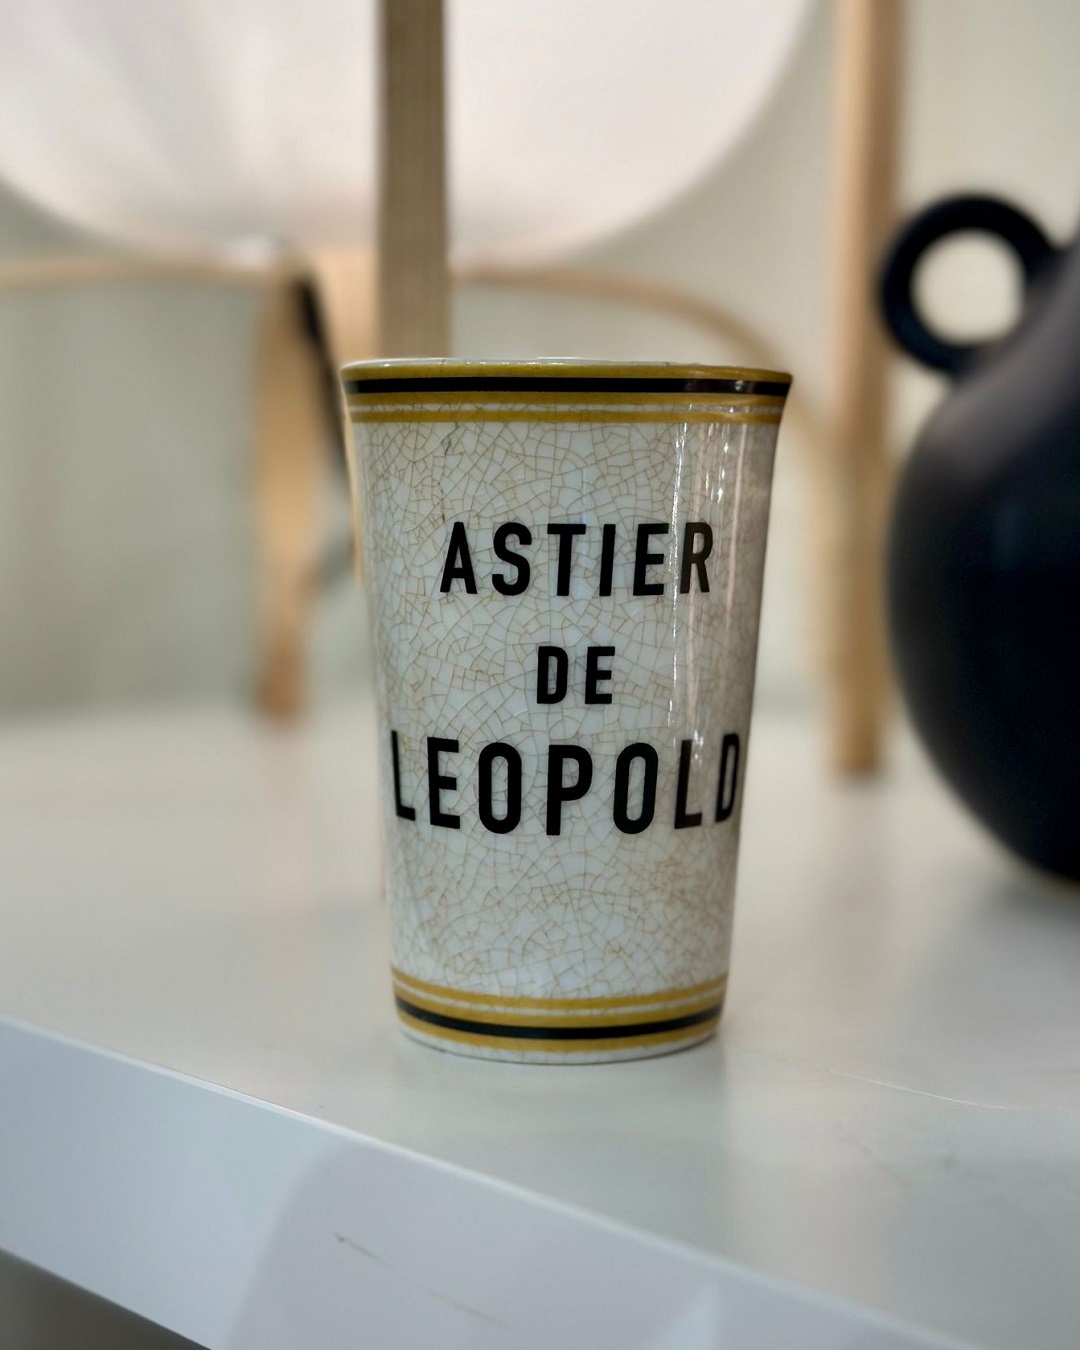 Astier de leopald cup on shelf